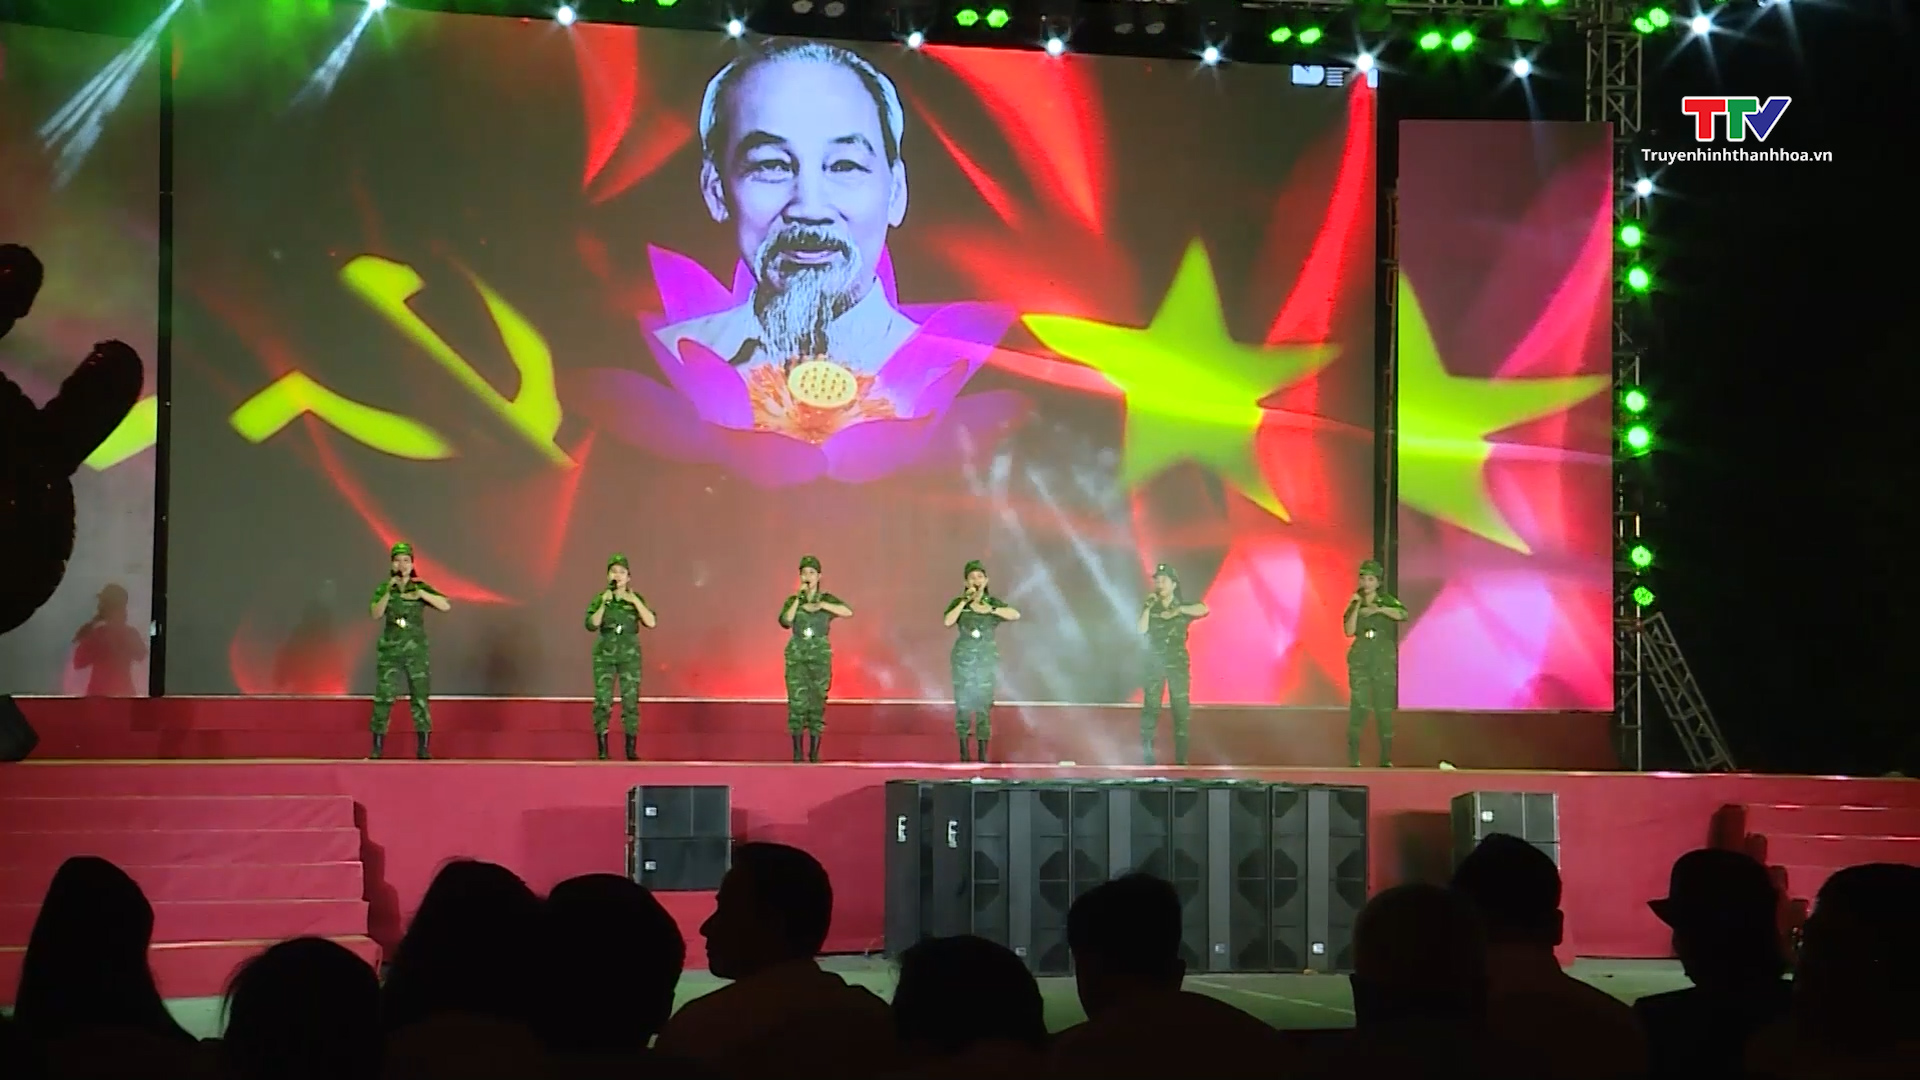 Thành phố Thanh Hóa tổ chức chương trình văn nghệ chào mừng 59 năm Hàm Rồng chiến thắng- Ảnh 2.